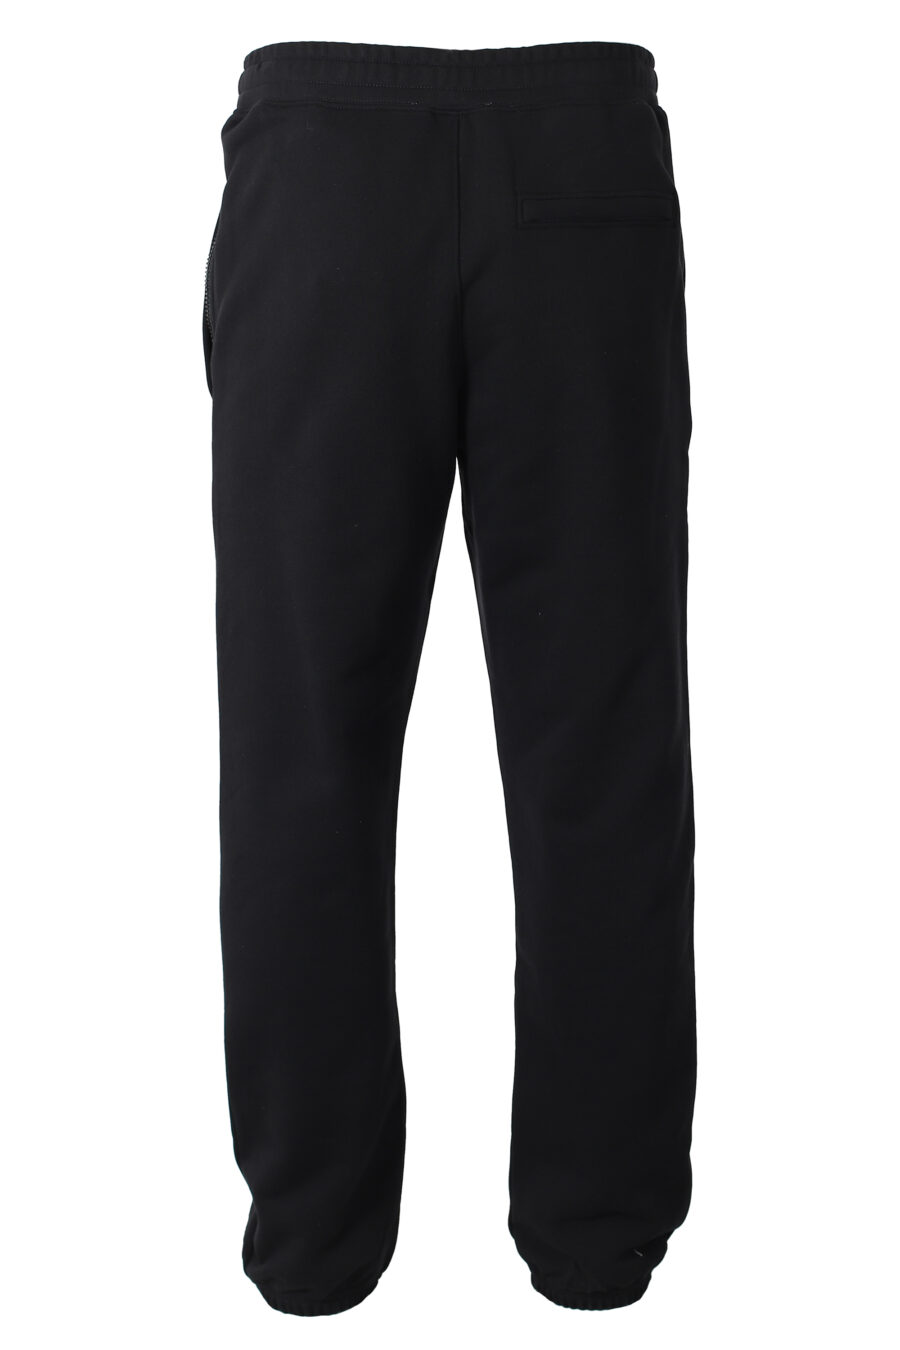 Pantalón de chándal negro con logo oso monocromático - IMG 9899